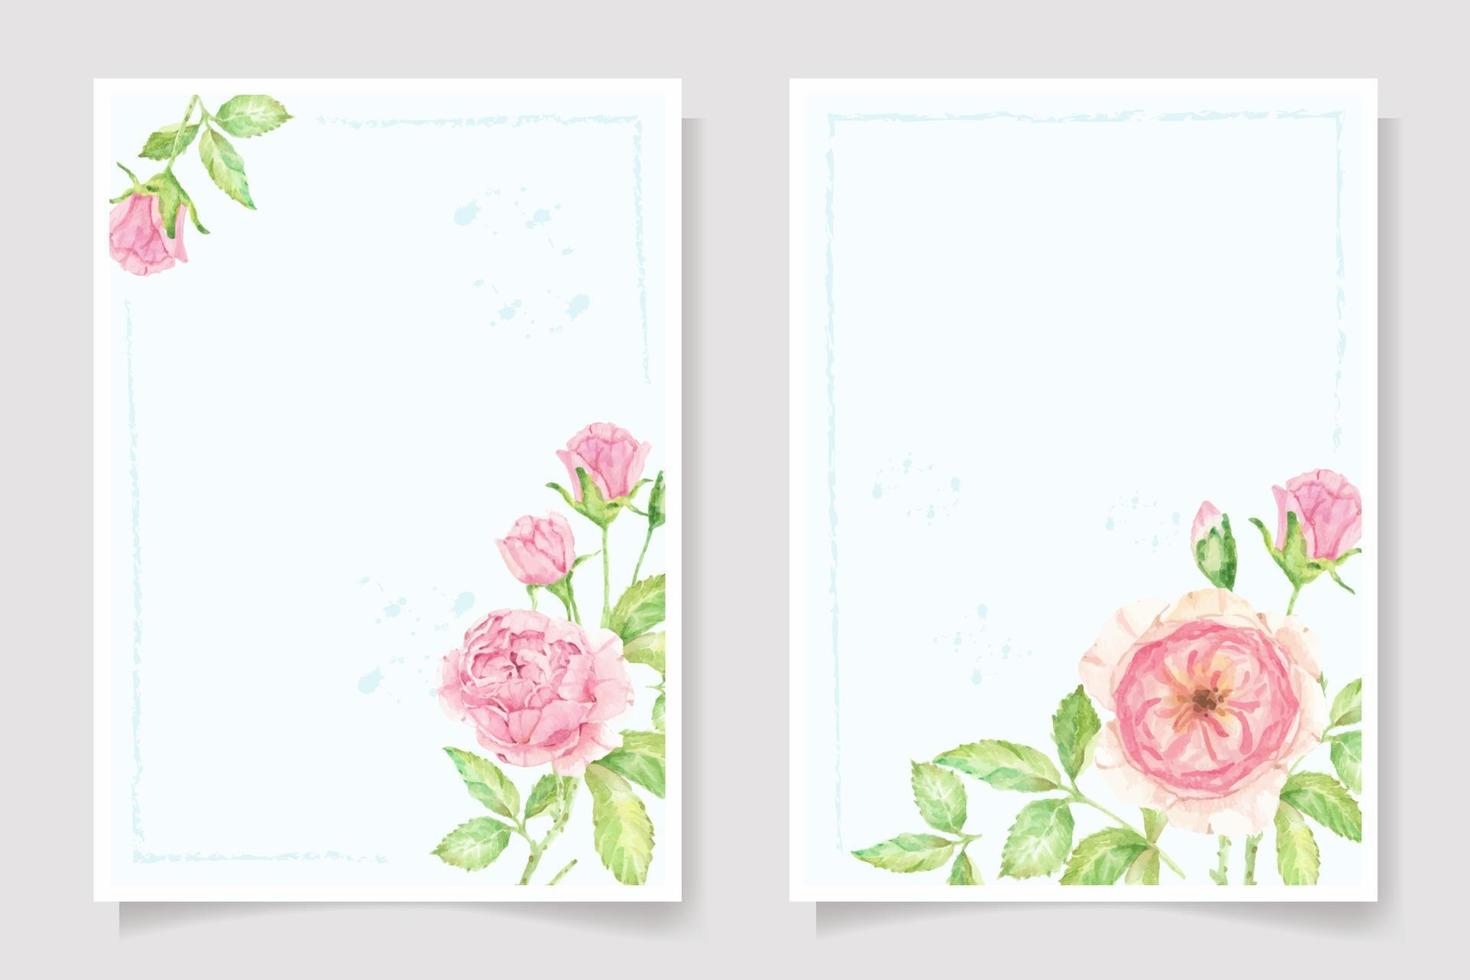 raccolta del modello della carta dell'invito di nozze del mazzo del ramo del fiore della rosa dell'acquerello vettore